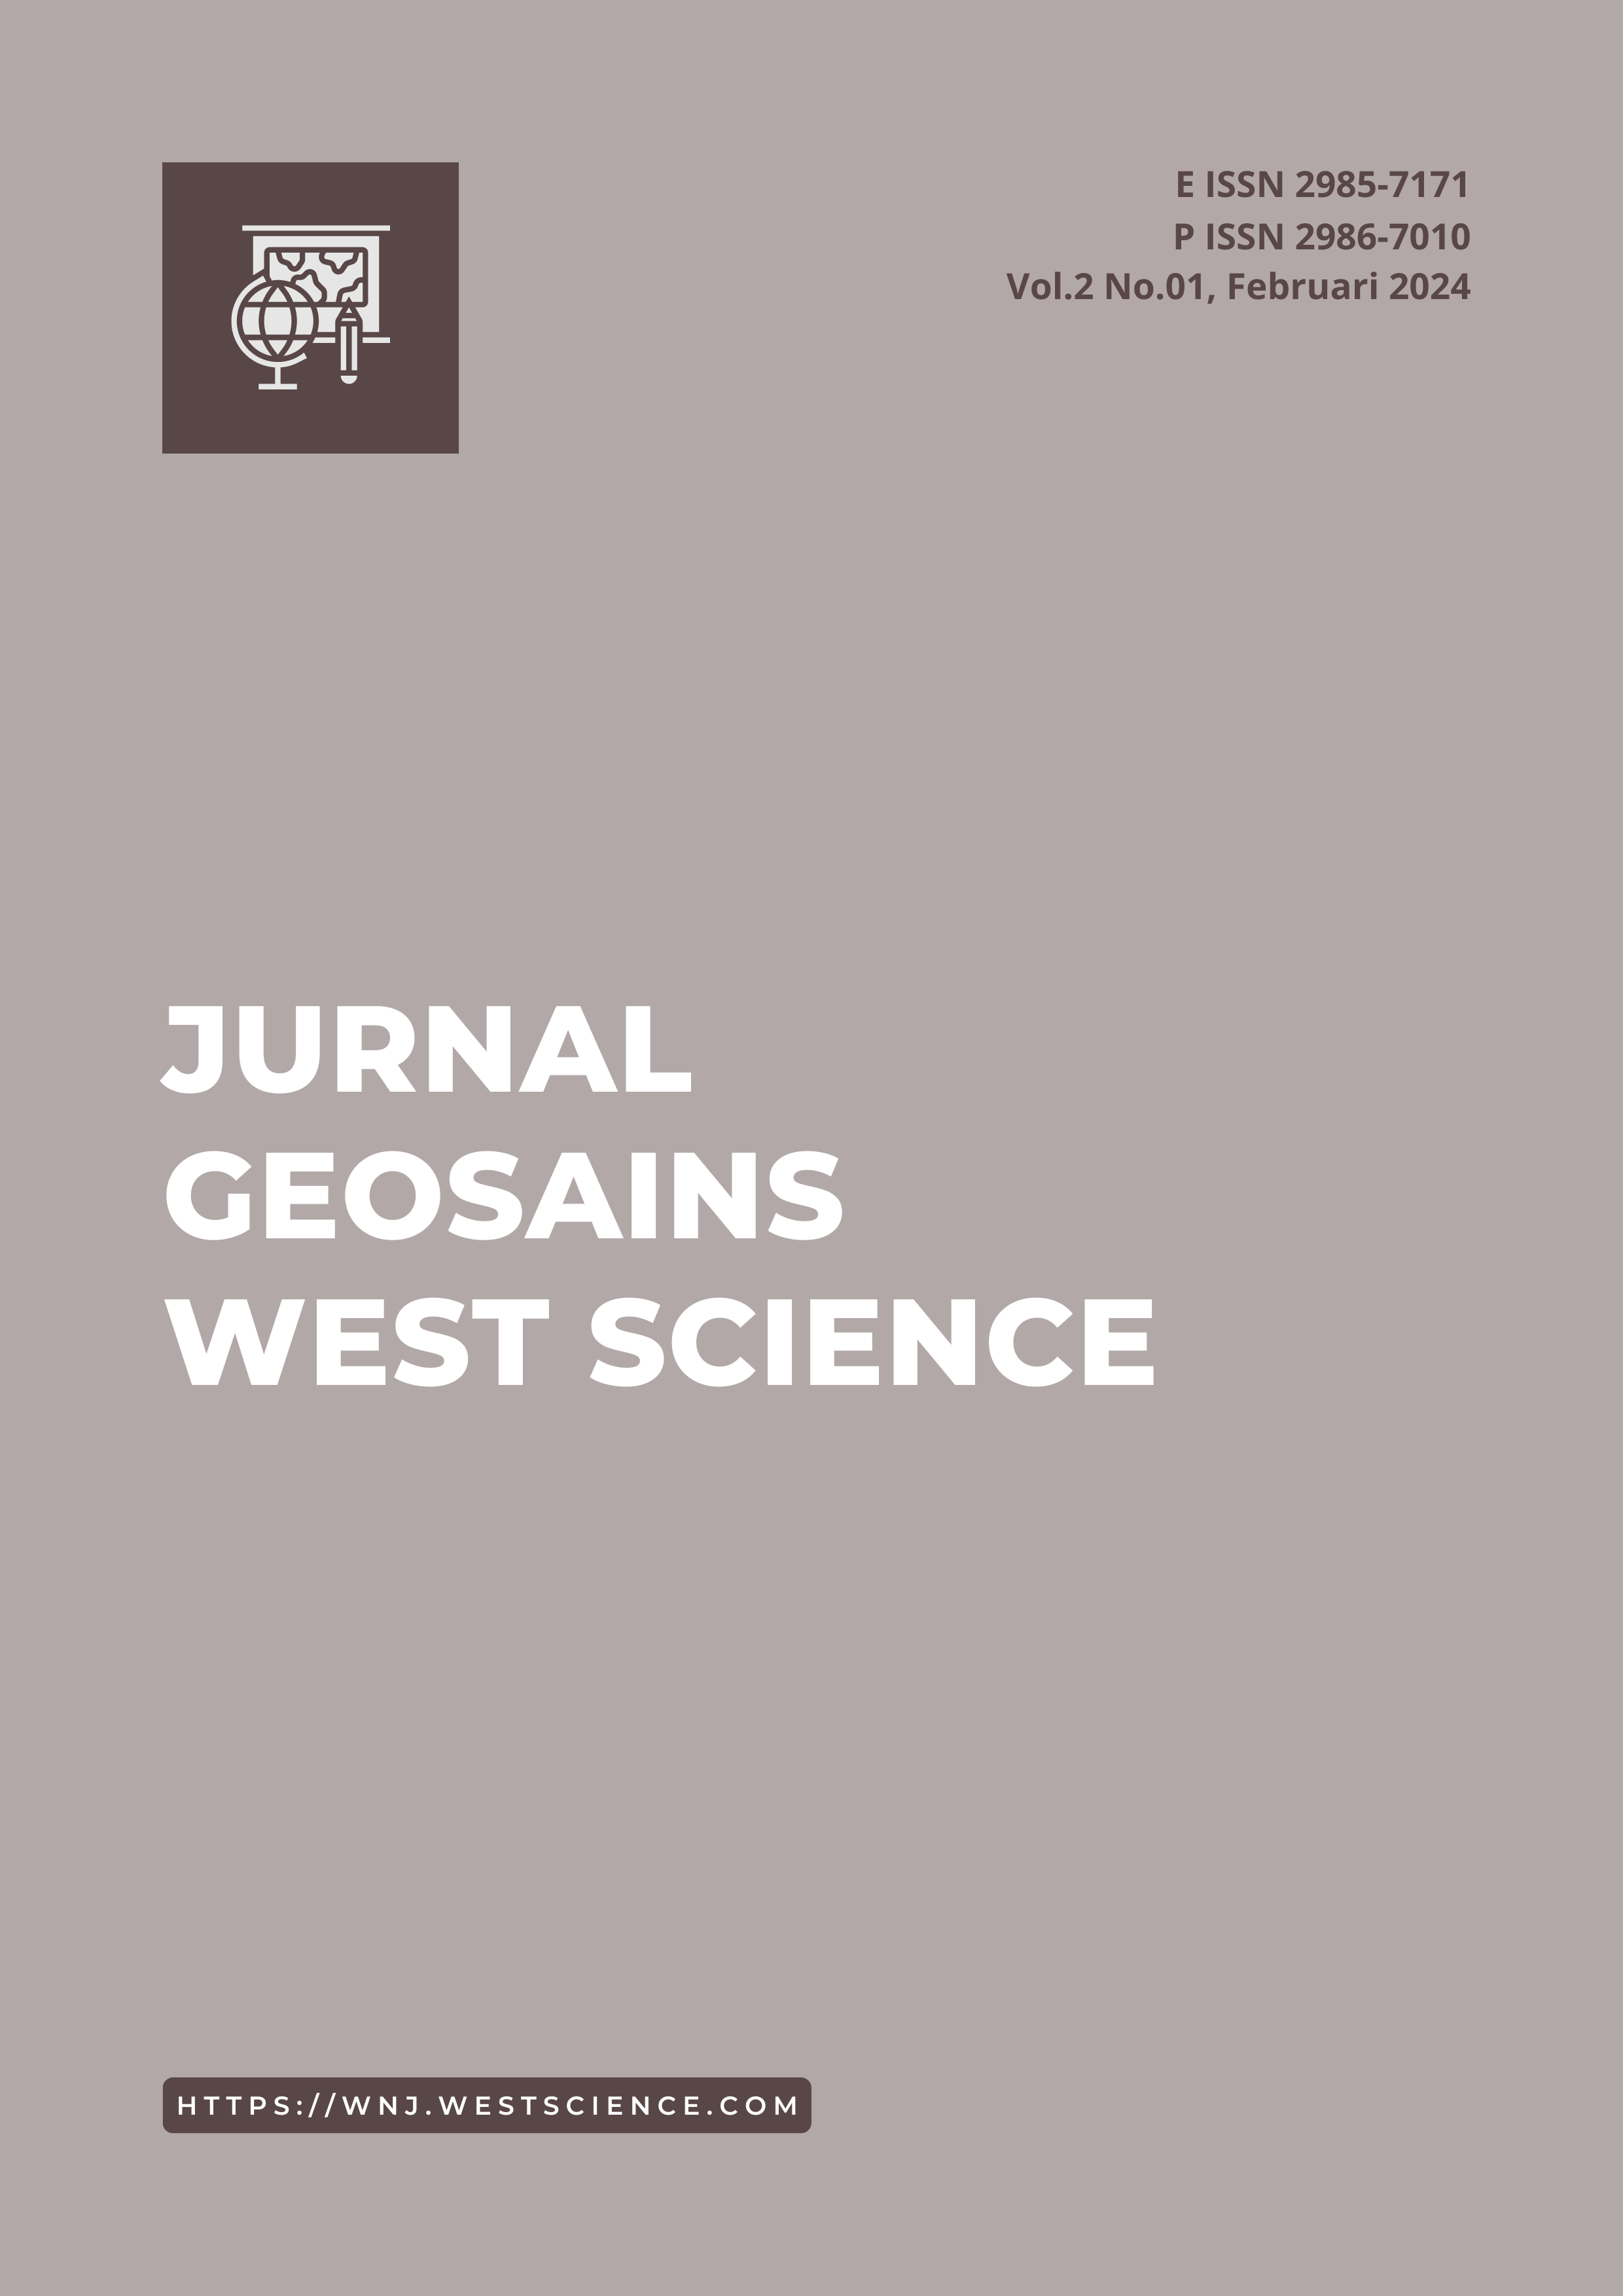 					Lihat Vol 2 No 01 (2024): Jurnal Geosains West Science
				